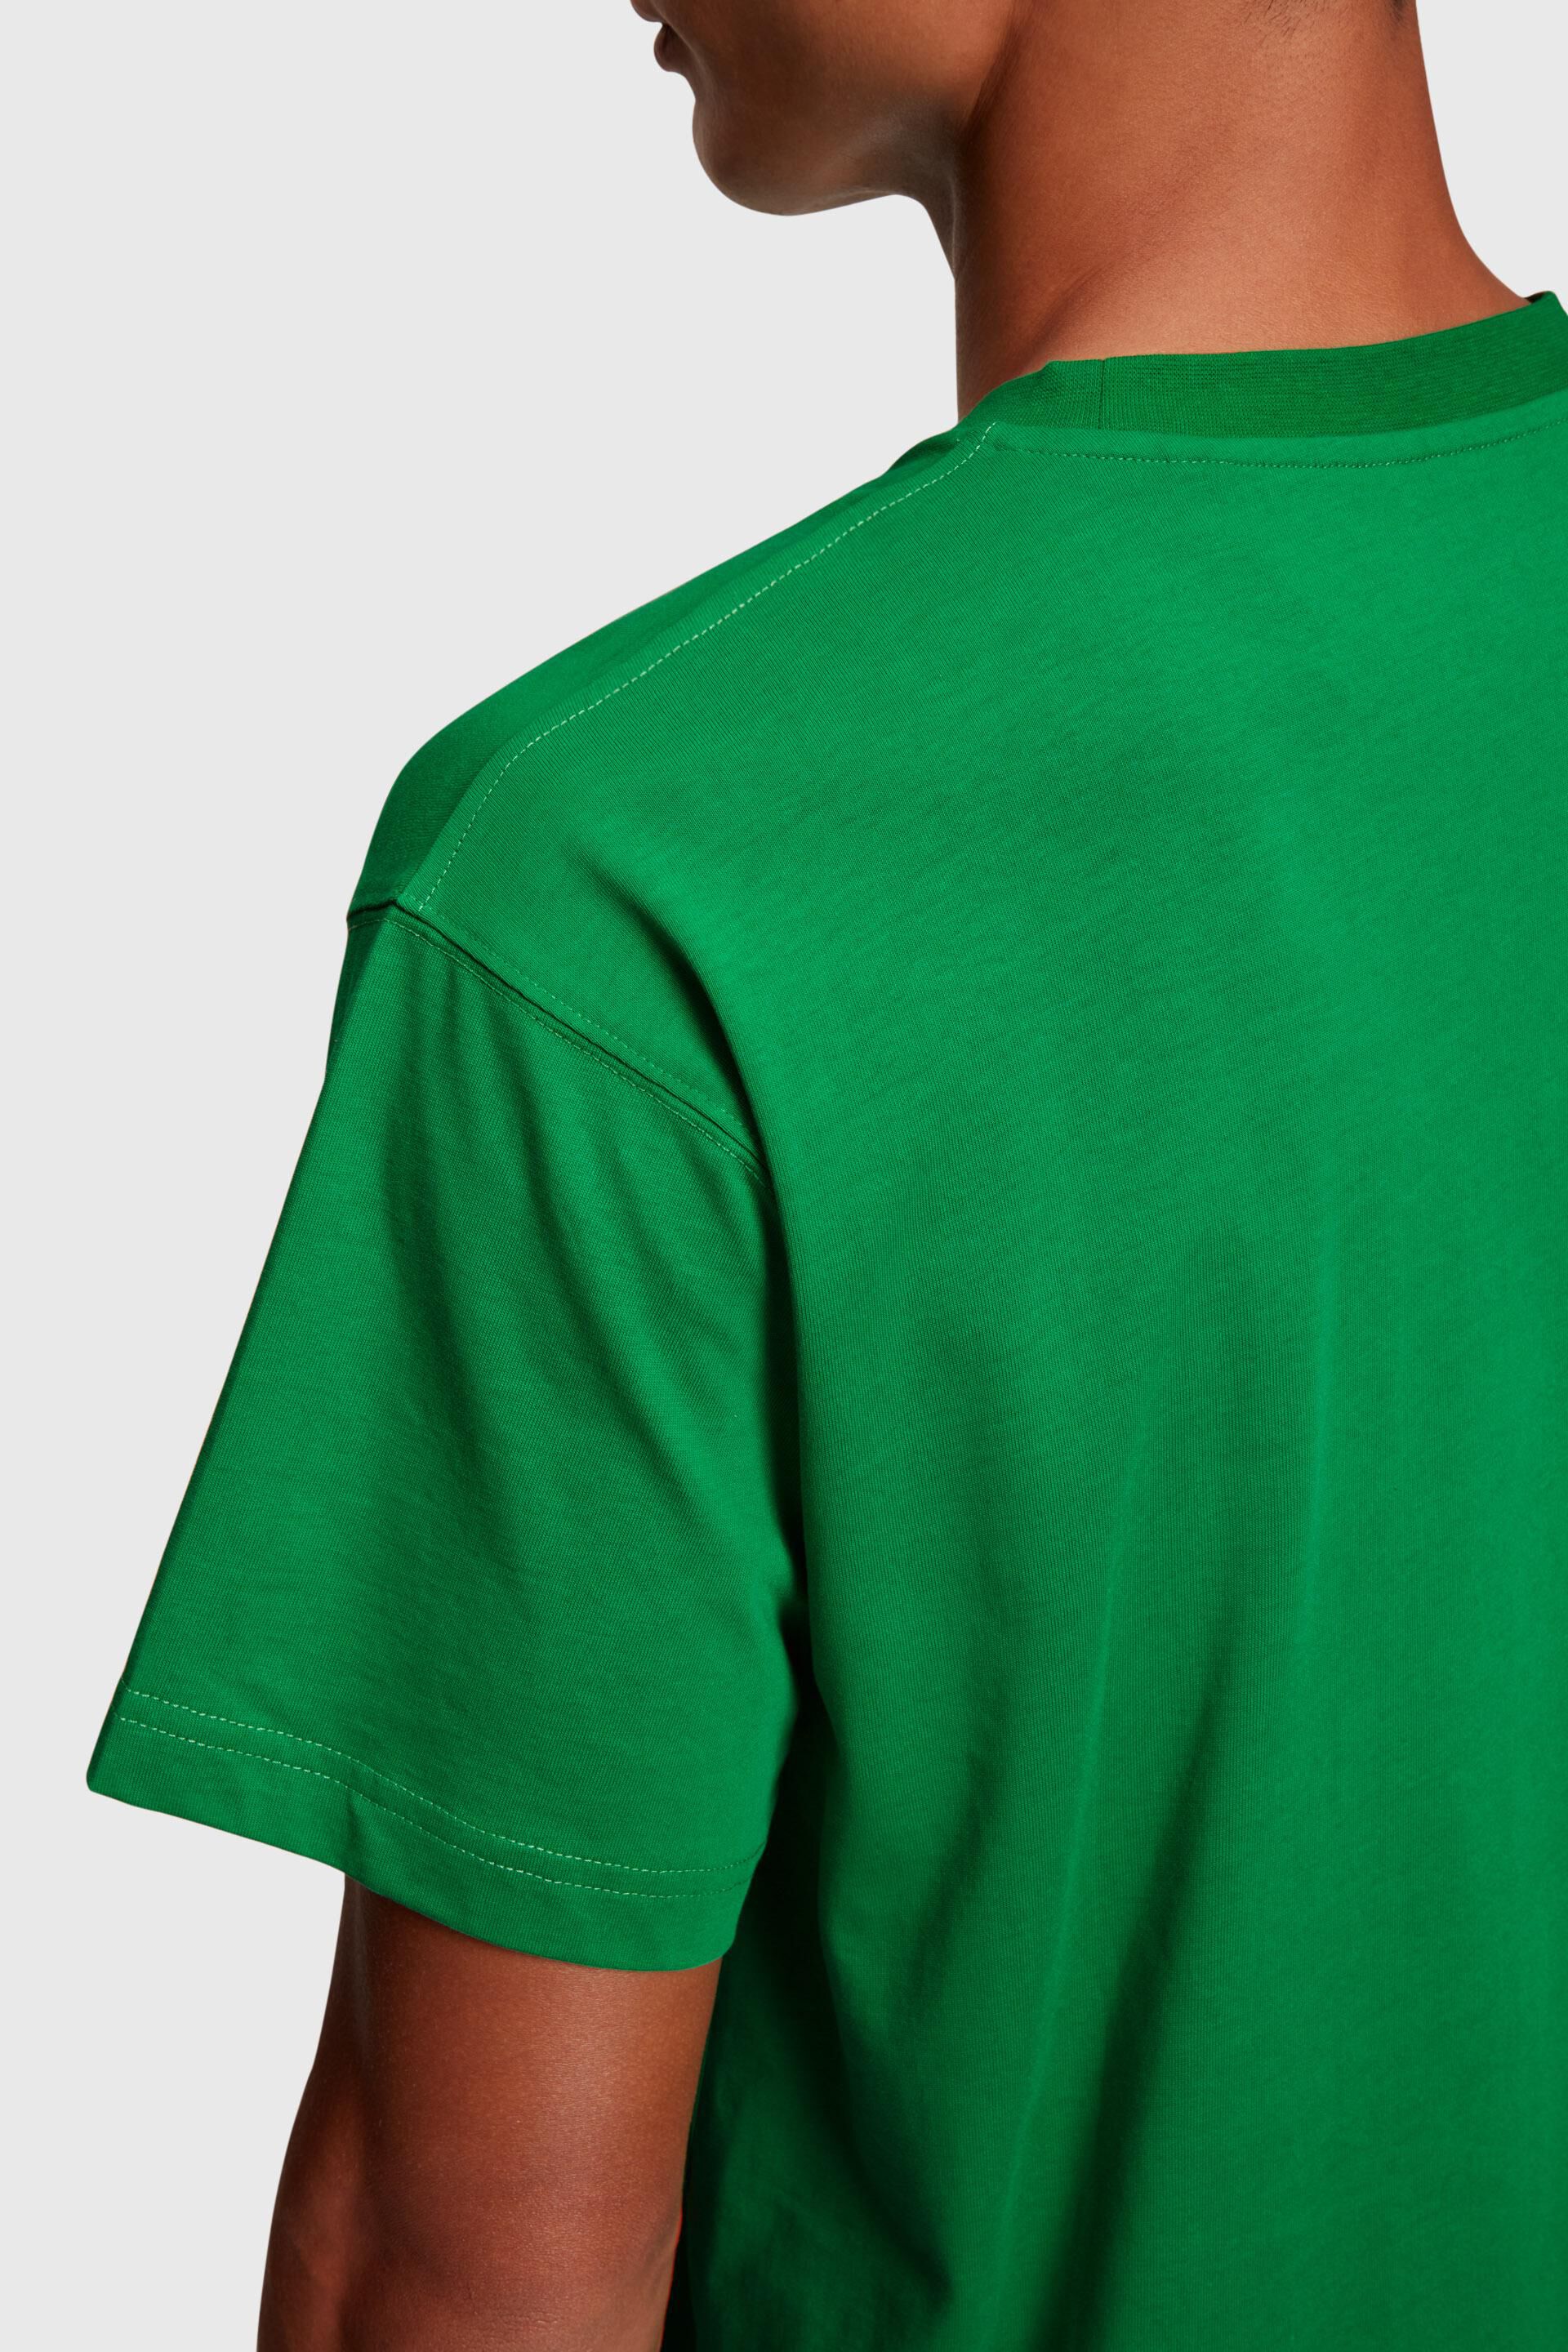 Esprit der mit Brust T-Shirt Logo-Applikation auf aufgeflockter